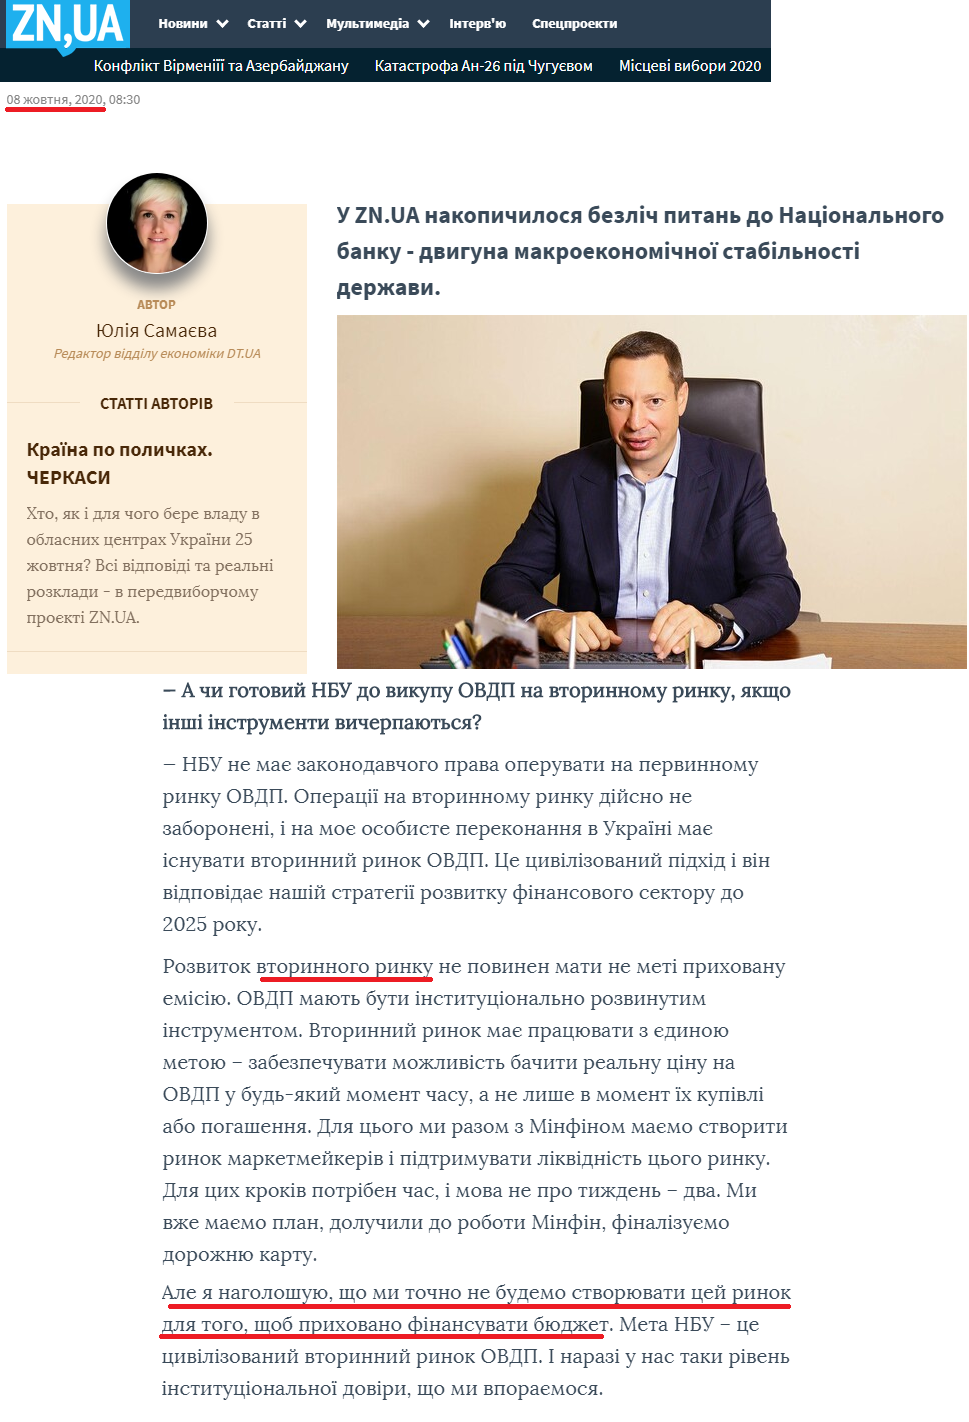 https://zn.ua/ukr/interview/kirilo-shevchenko-mvf-tse-ne-pro-hroshi-tse-pro-doviru.html